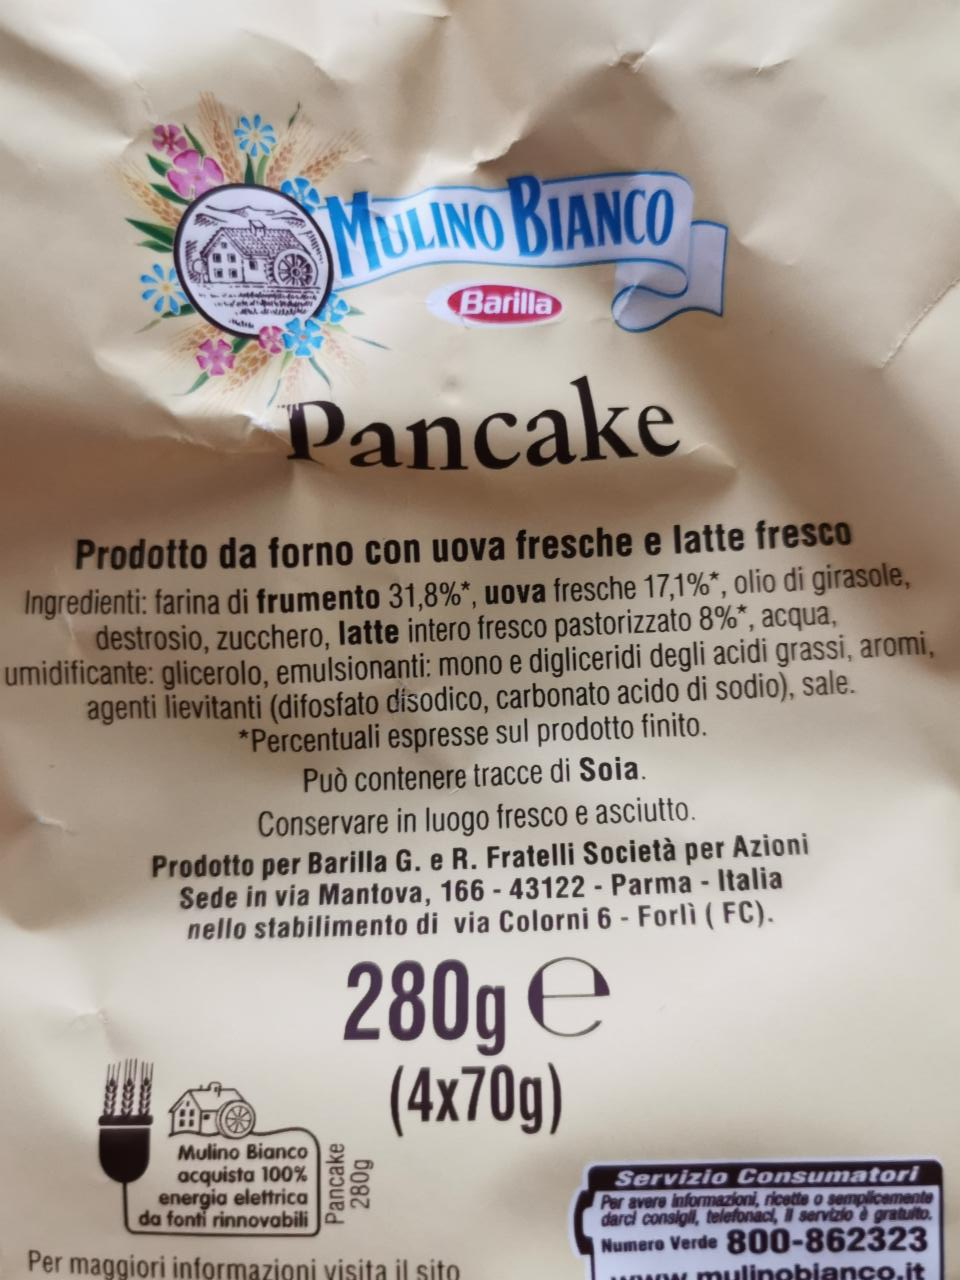 Pancake - Mulino Bianco - 280g